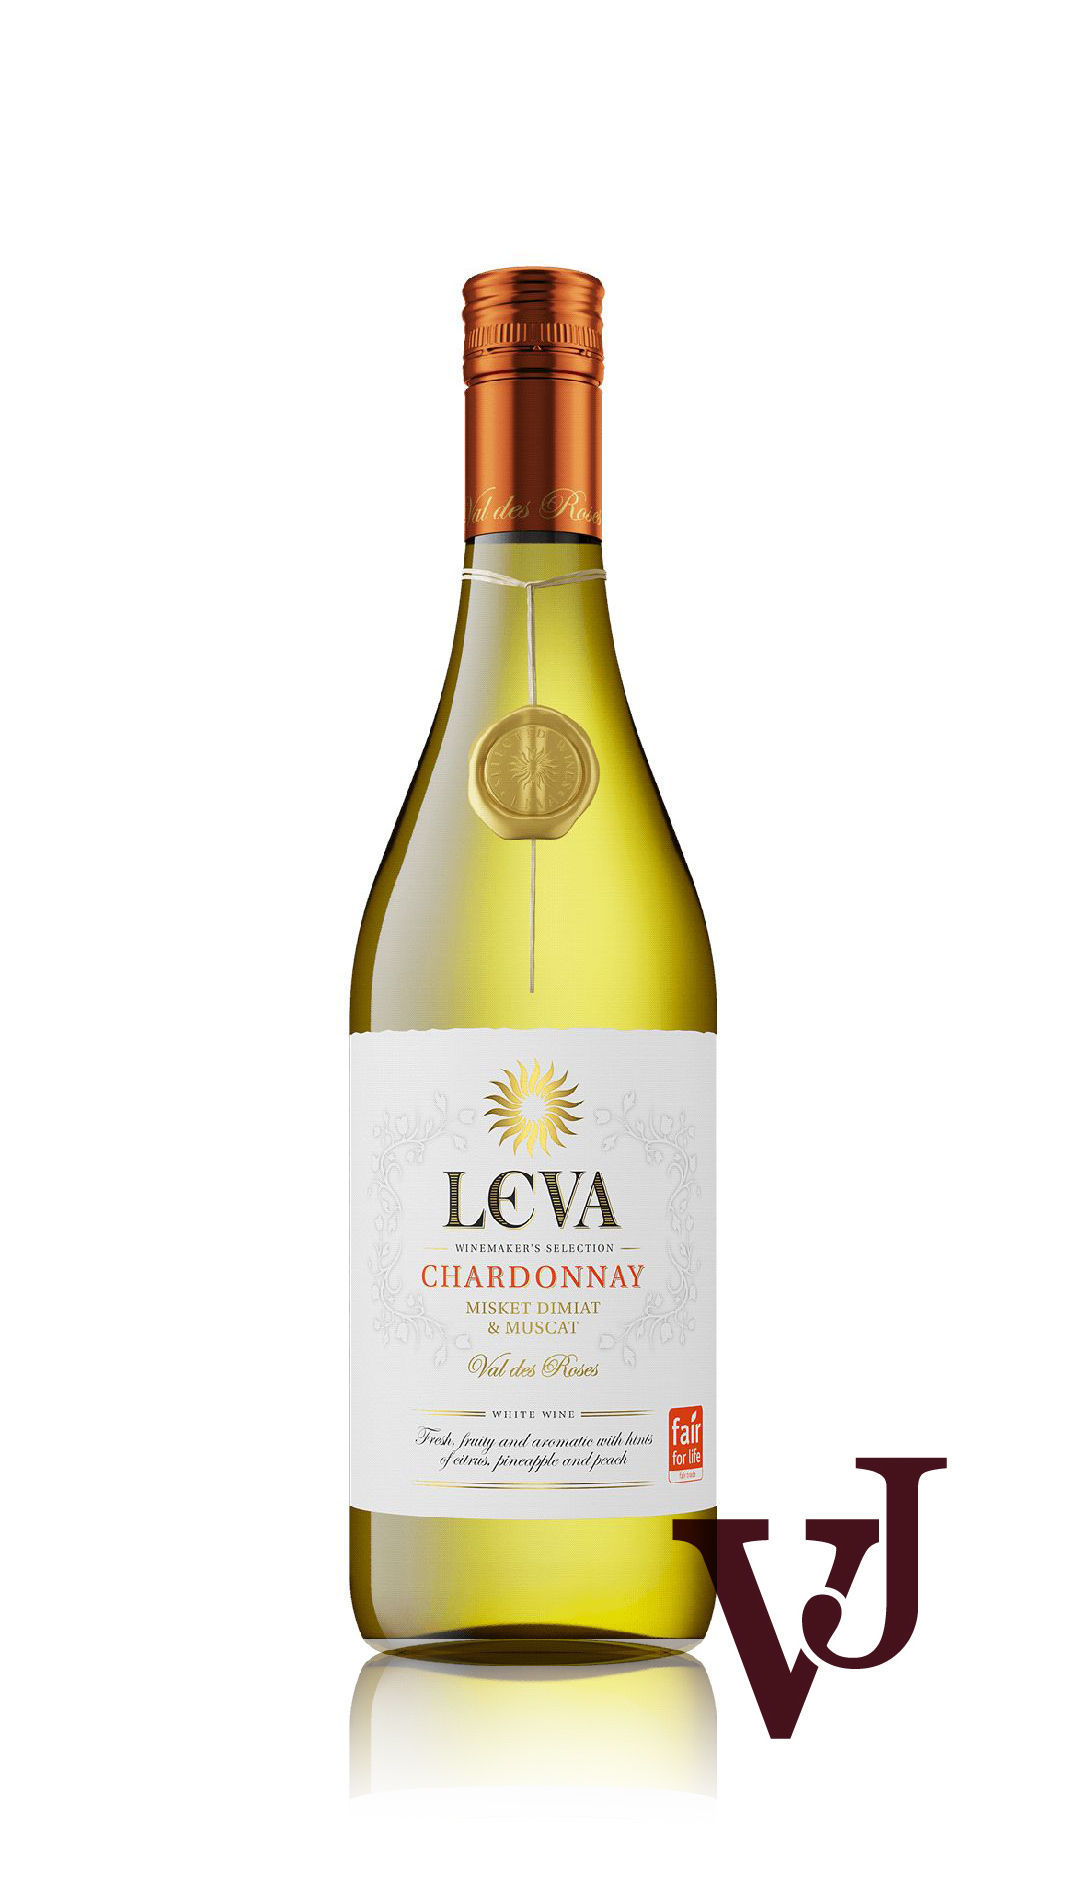 Vitt Vin - Leva Chardonnay Misket Dimiat & Muscat artikel nummer 271501 från producenten Vinex Slavyantsi från området Bulgarien